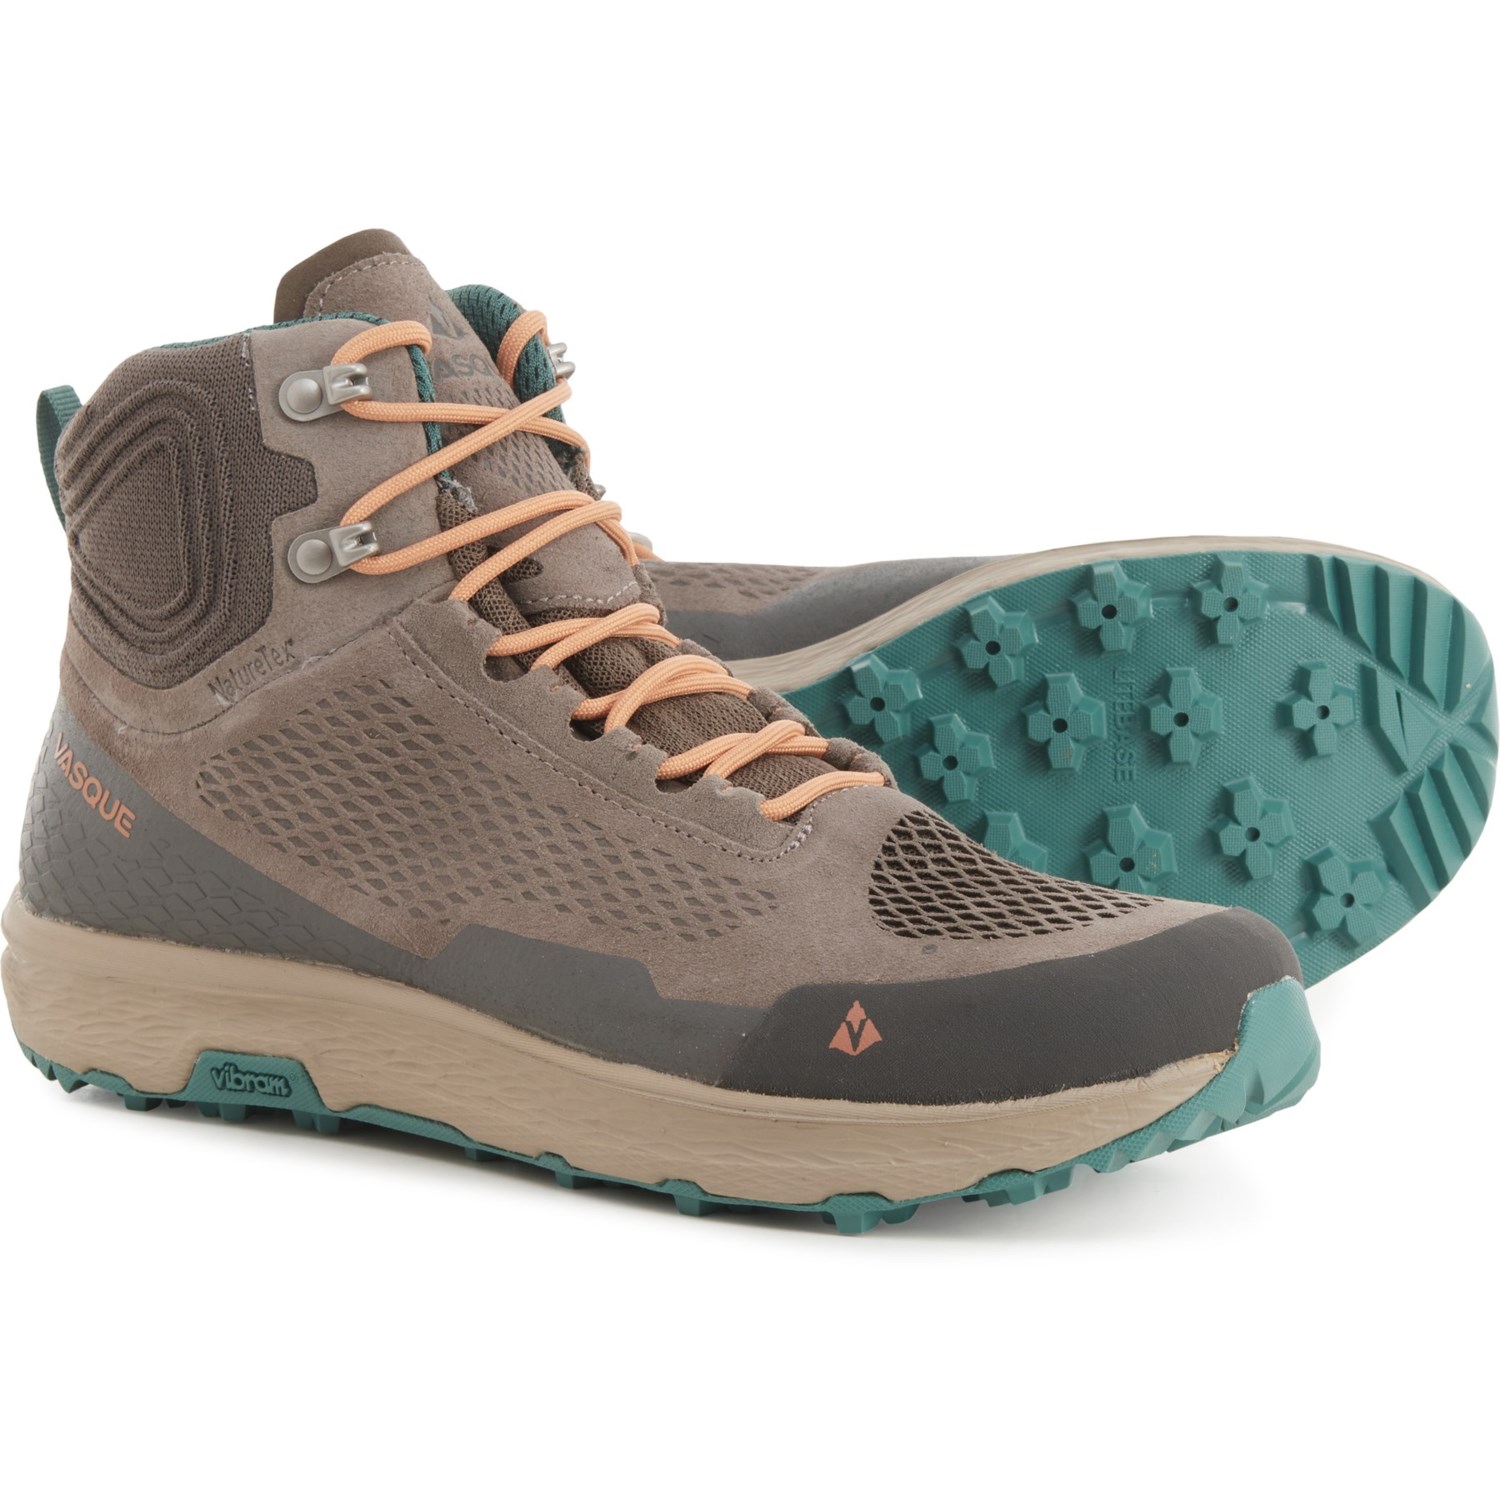 Vasque Breeze LT NTX Mid Hiking Boots - Waterproof (For Women)